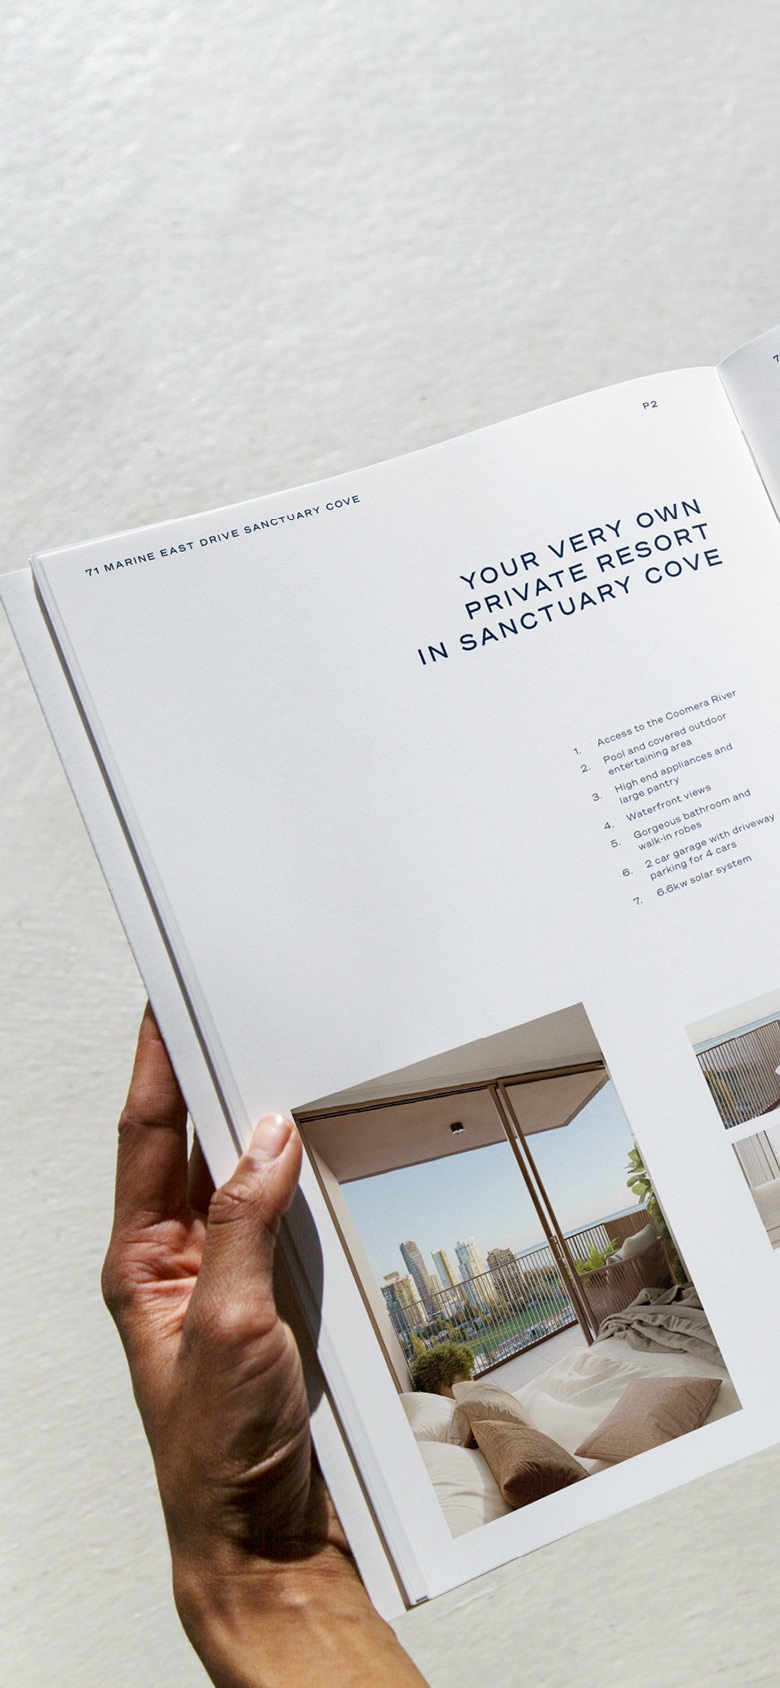 Kollosche Real Estate - A4 Property Brochure - Print Advertising | Atollon - a design company